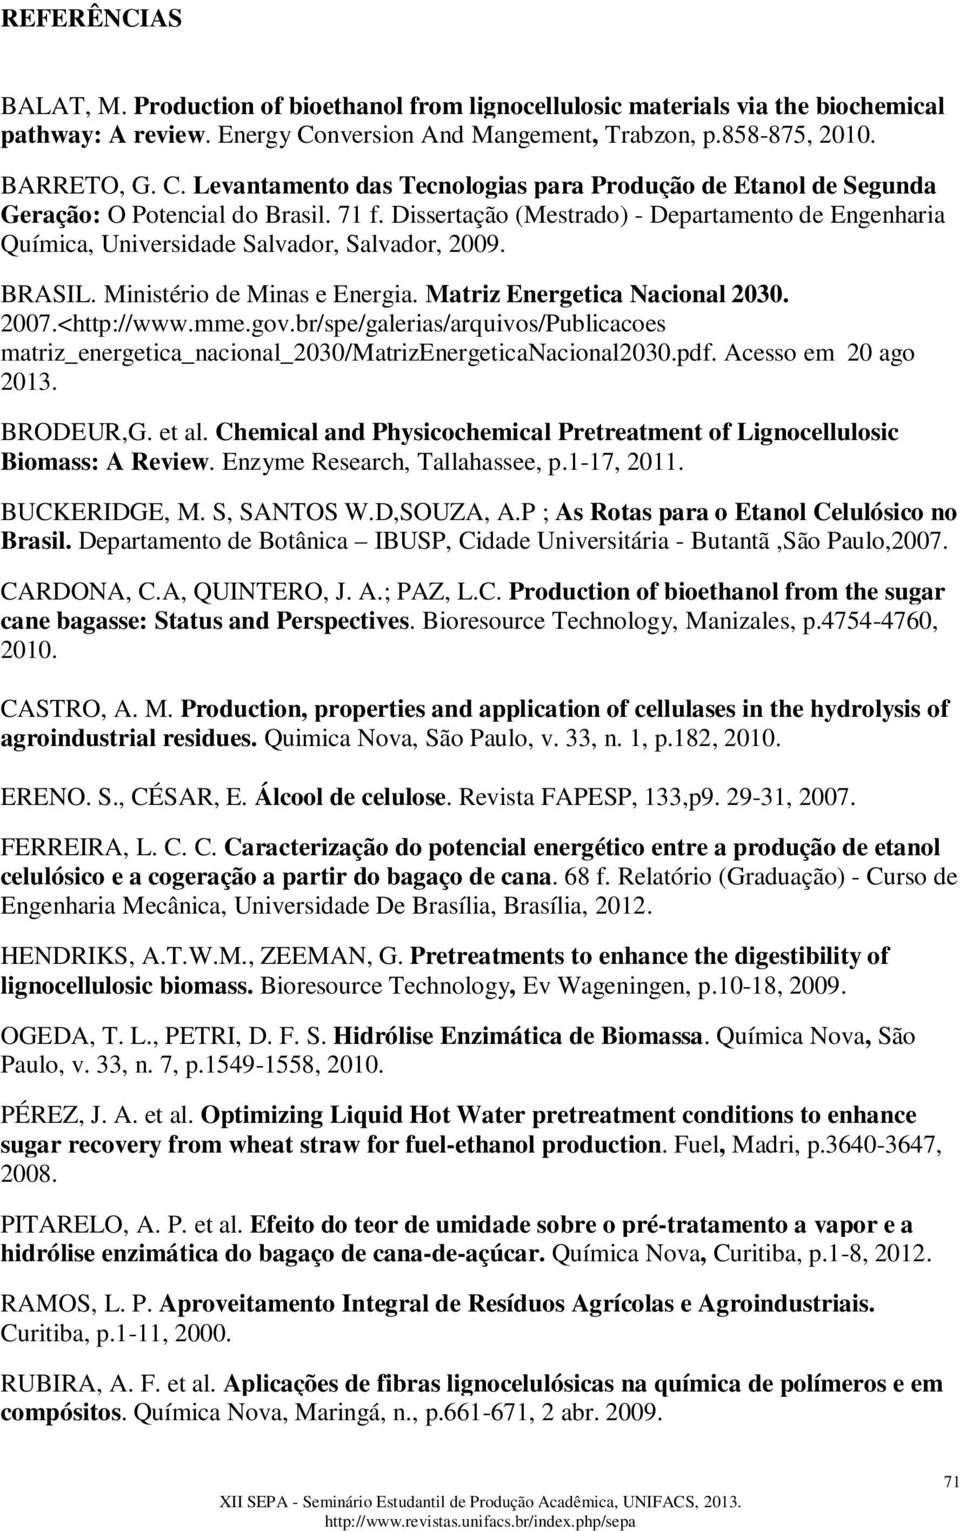 Dissertação (Mestrado) - Departamento de Engenharia Química, Universidade Salvador, Salvador, 2009. BRASIL. Ministério de Minas e Energia. Matriz Energetica Nacional 2030. 2007.<http://www.mme.gov.